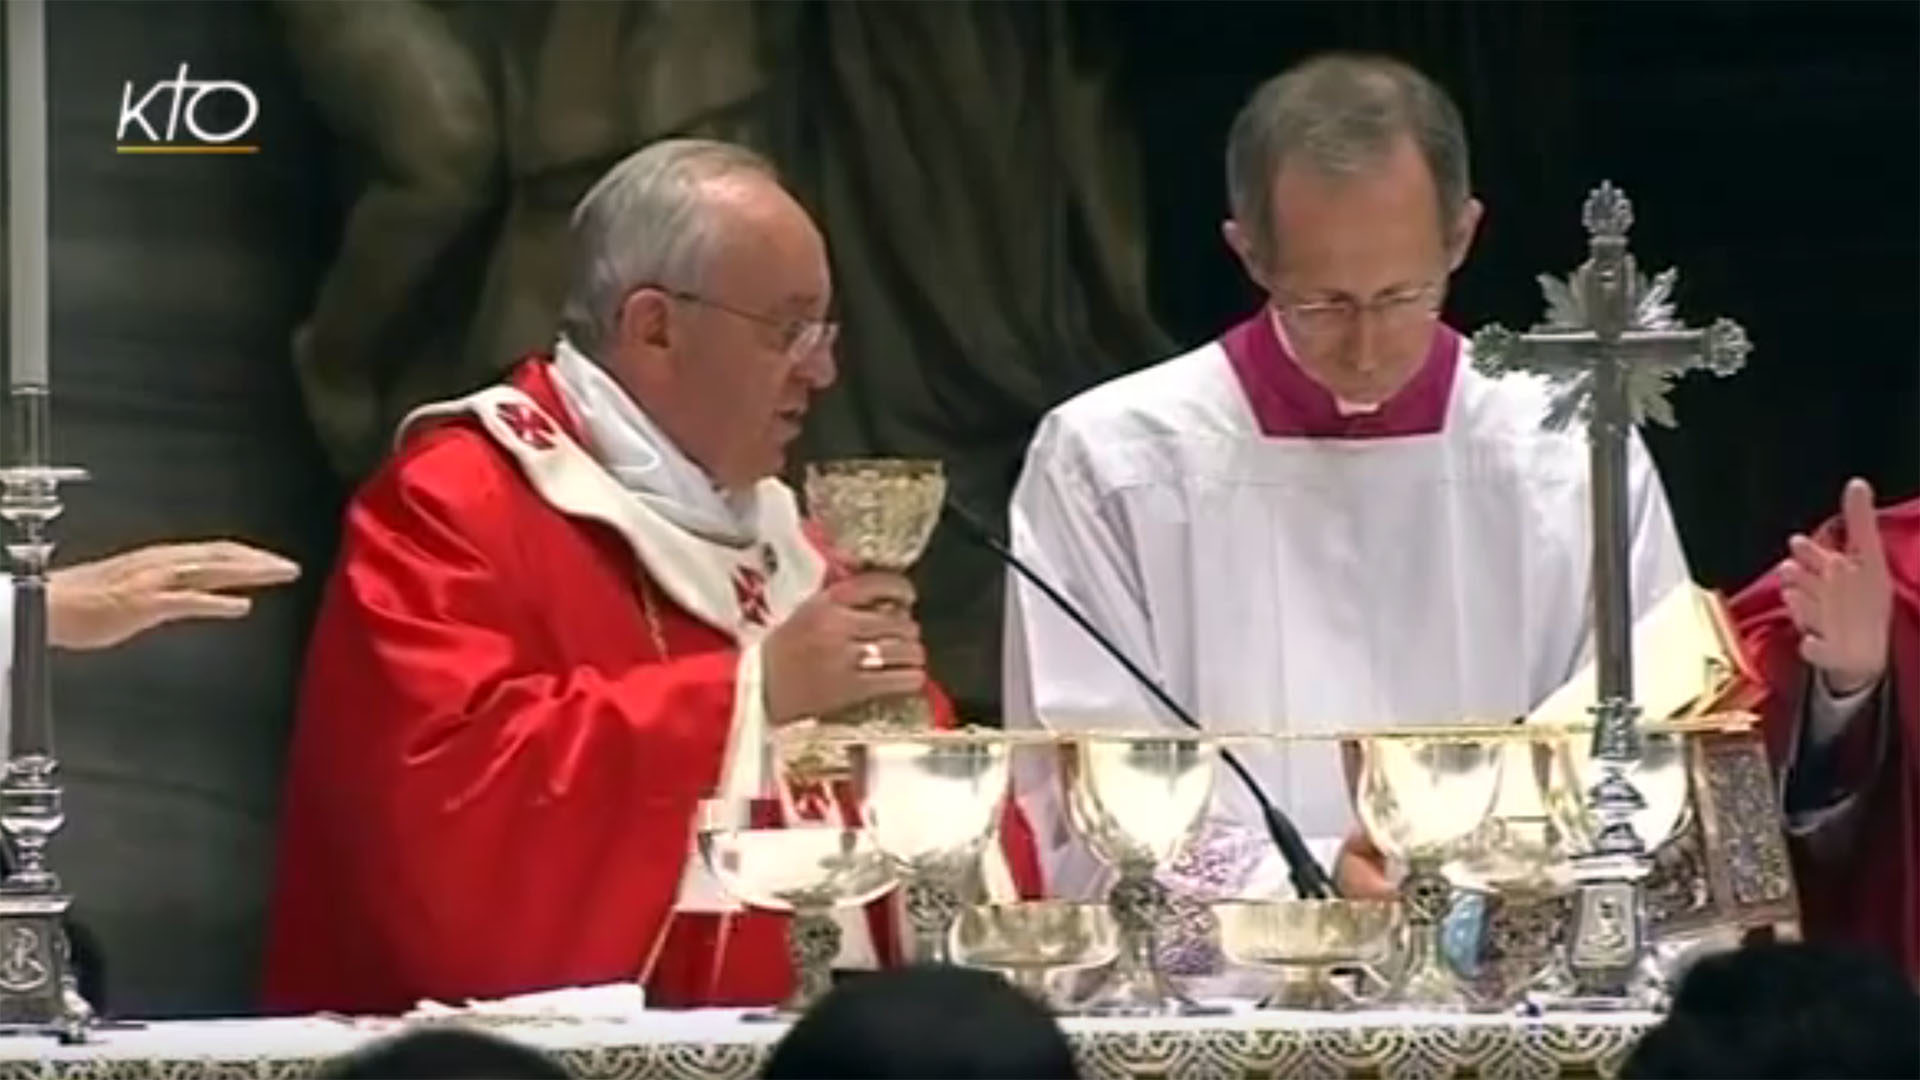 Le pape François a célébré une messe en suffrage pour les cardinaux et des évêques décédés en 2016, le 4 novembre 2016, dans la basilique Saint-Pierre à Rome. (Photo: captation d'écran/KTO)